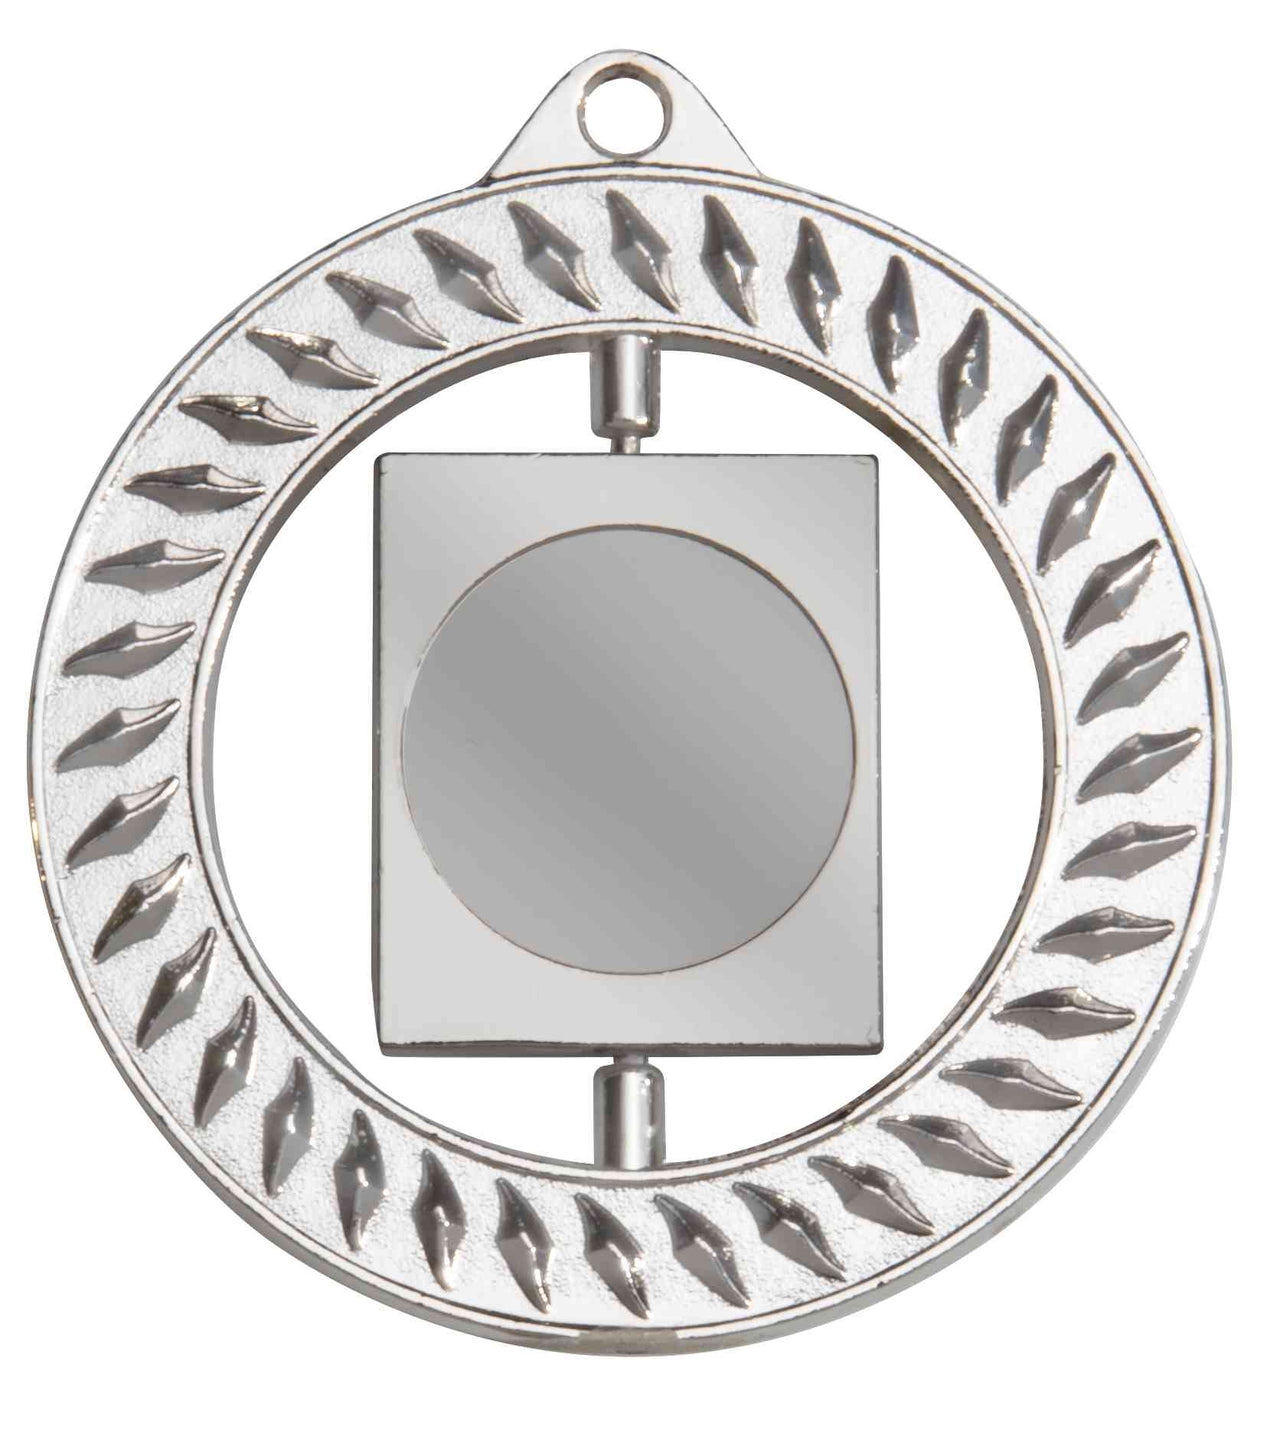 Runder Metallrahmen mit quadratischem Spiegel in der Mitte, dekorativen Kanten und POMEKI Medaillen Regensburg 70 mm PK79320g-E25-Akzenten.